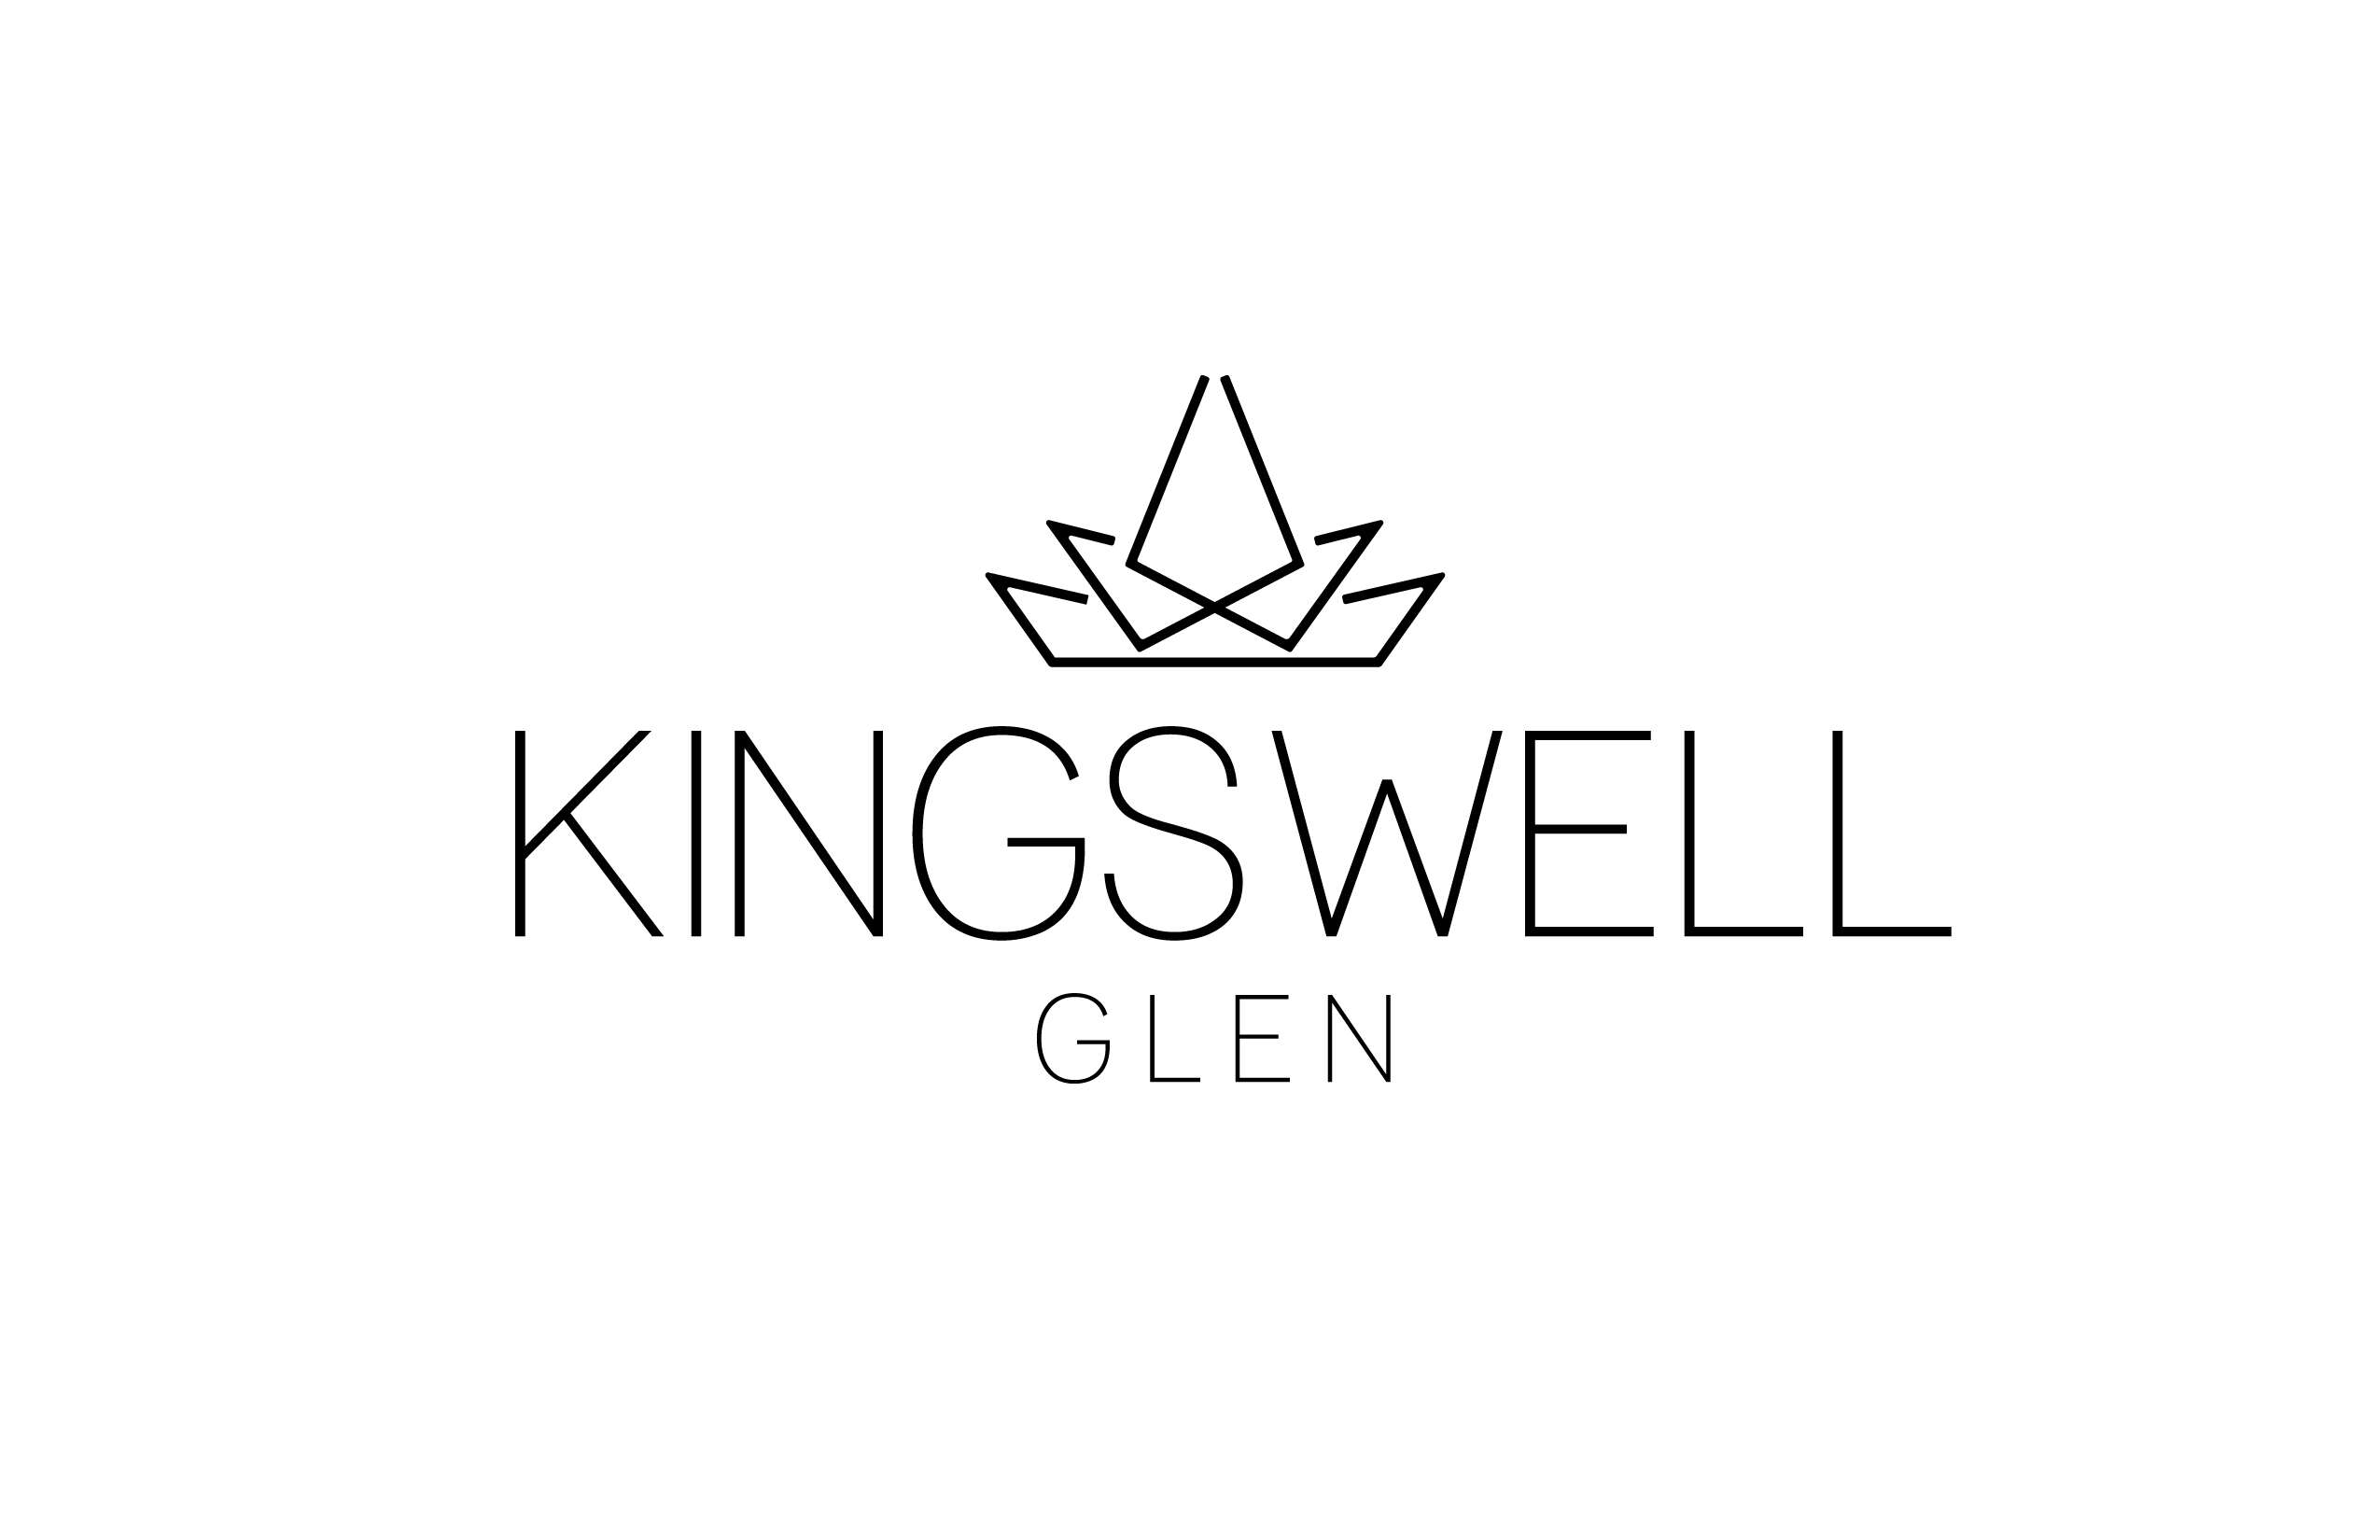 Kingswell Glen